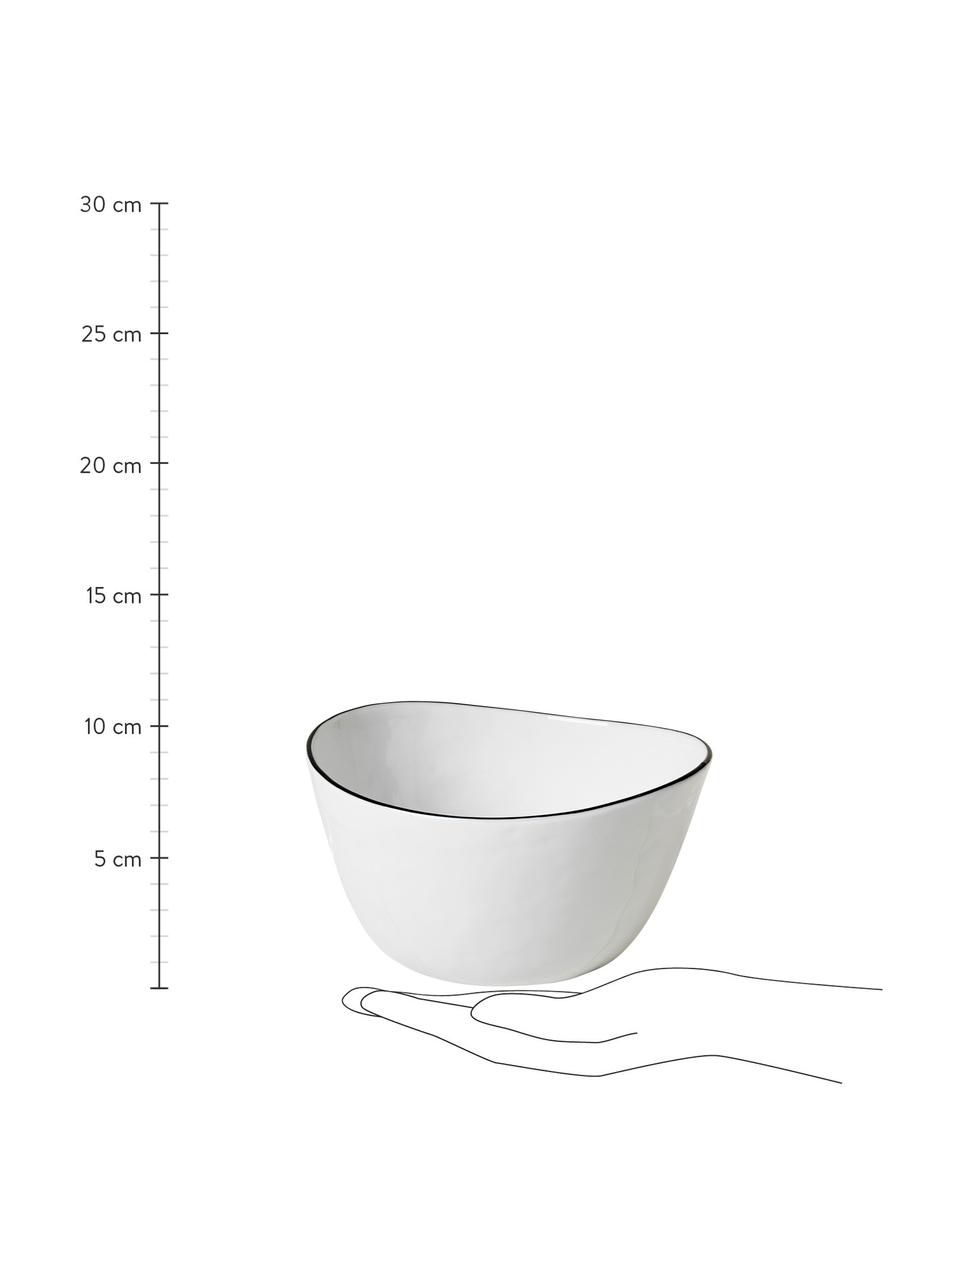 Handgemachte Schüssel Salt mit schwarzem Rand, Ø 20 cm, Porzellan, Gebrochenes Weiß, Schwarz, Ø 20 cm